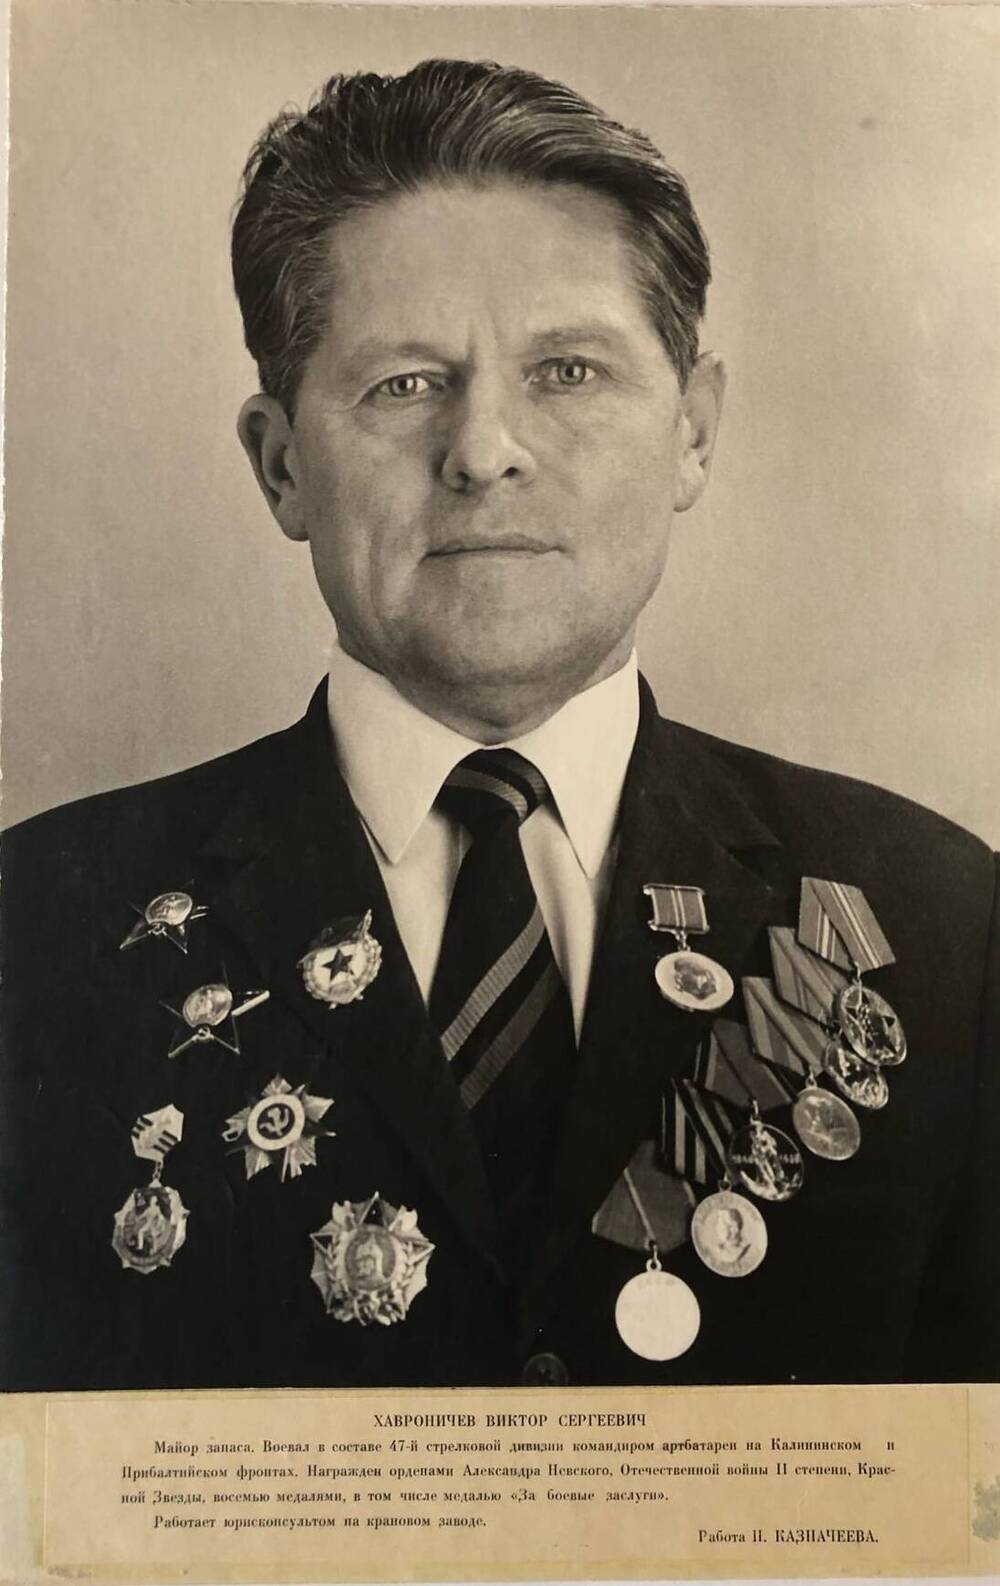 Фотография Хавроничева Виктора Сергеевича, участника Великой Отечественной войны 1941-1945 гг.